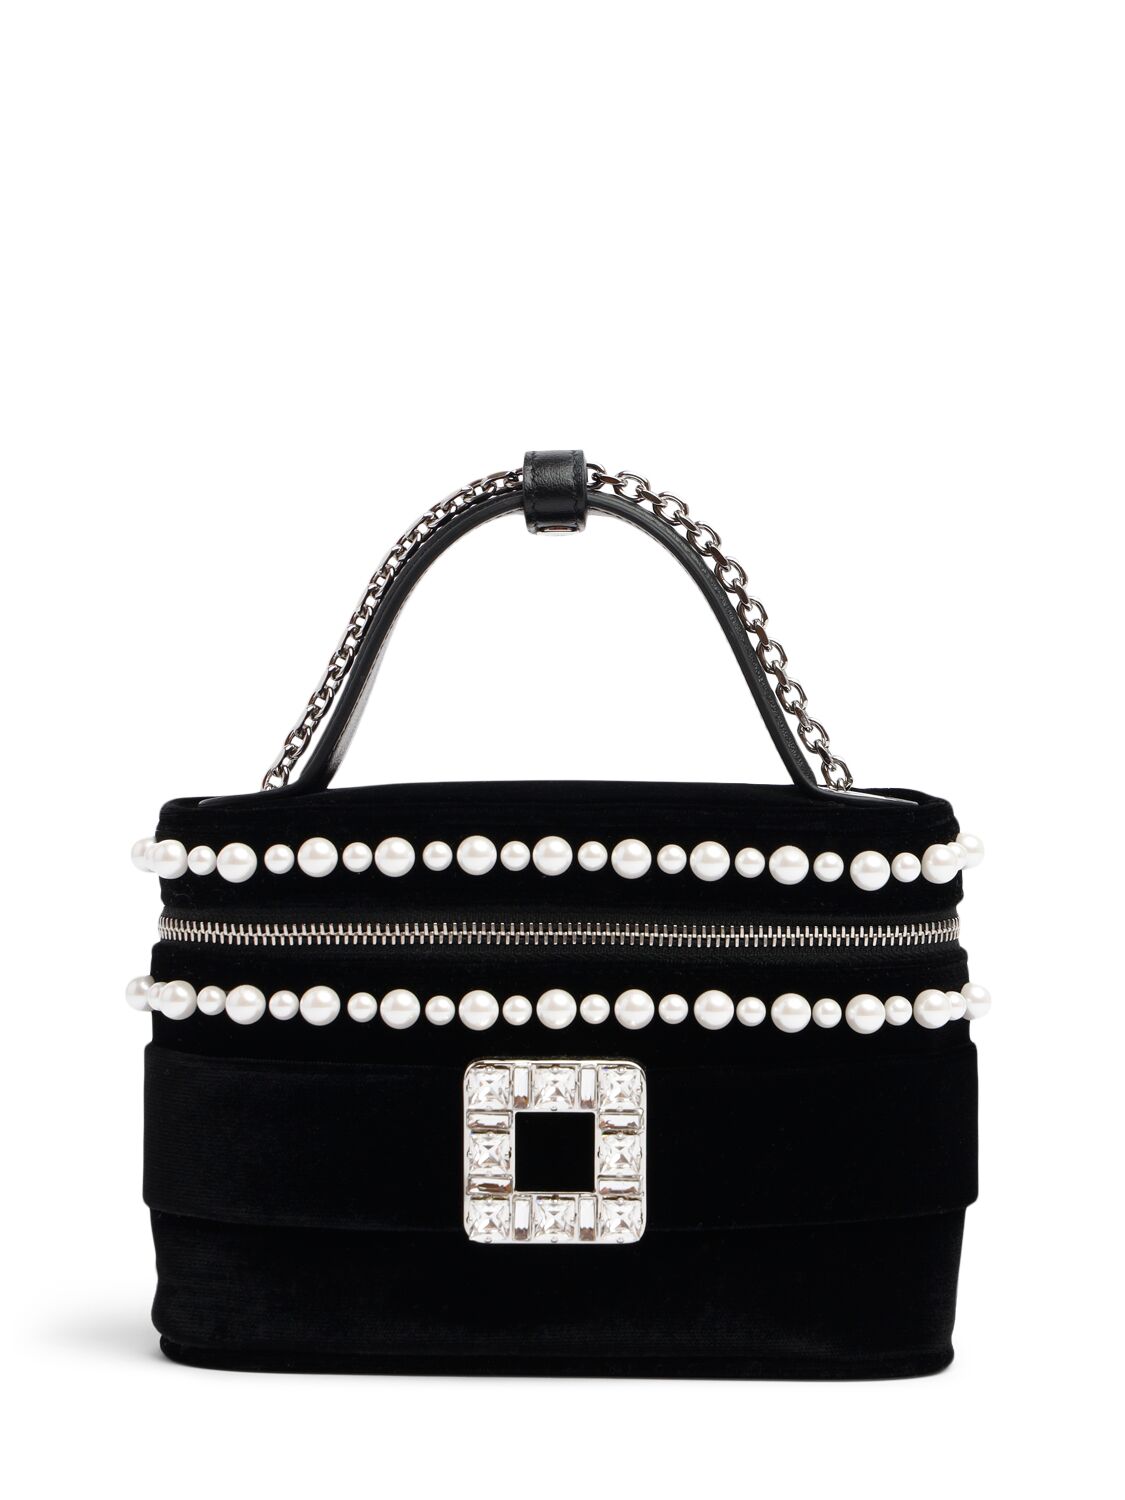 Roger Vivier Micro Vanity Embellished Top Handle Bag In Black